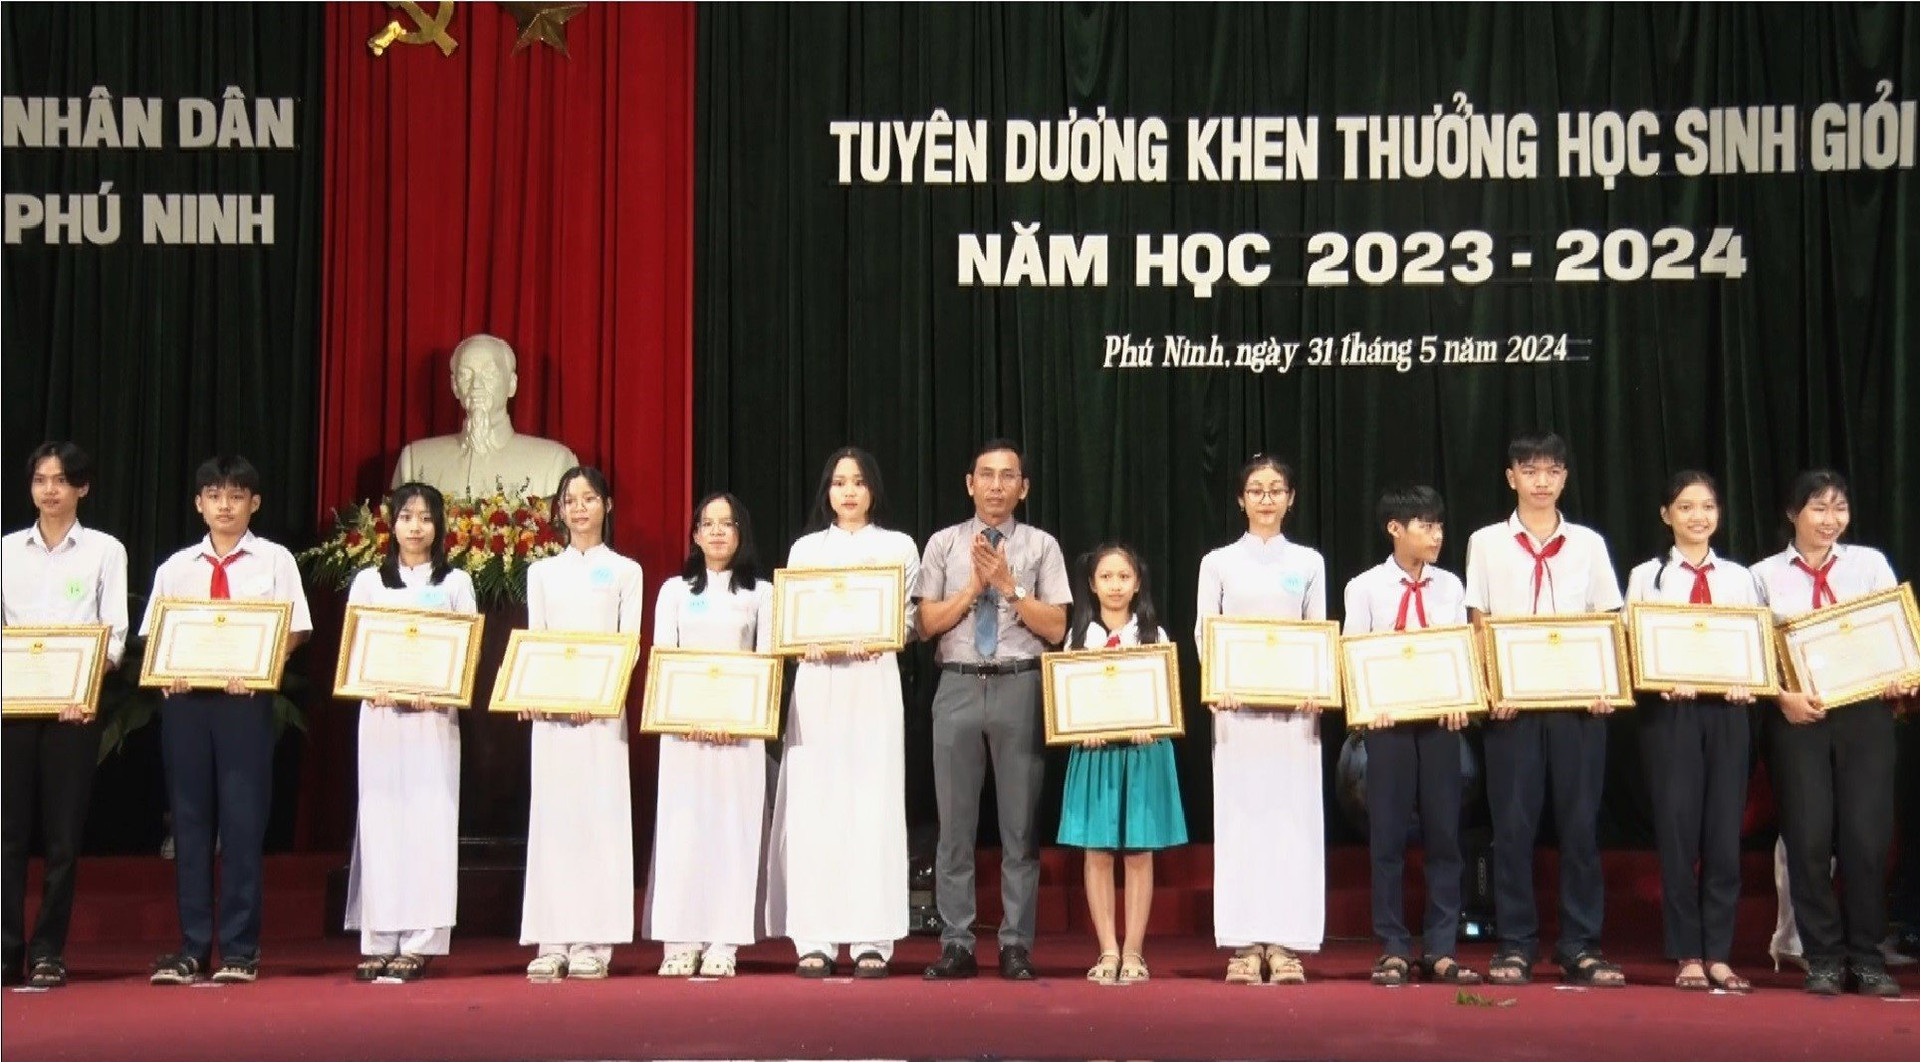 Ông Phan Thanh Thám, Phó Chủ tịch HĐND huyện Phú Ninh khen thưởng học sịnh đạt thành tích cao tại các kỳ thi, hội thi cấp huyện, cấp tỉnh, học sinh tiêu biểu năm học 2023 - 2024. Ảnh: Q.V